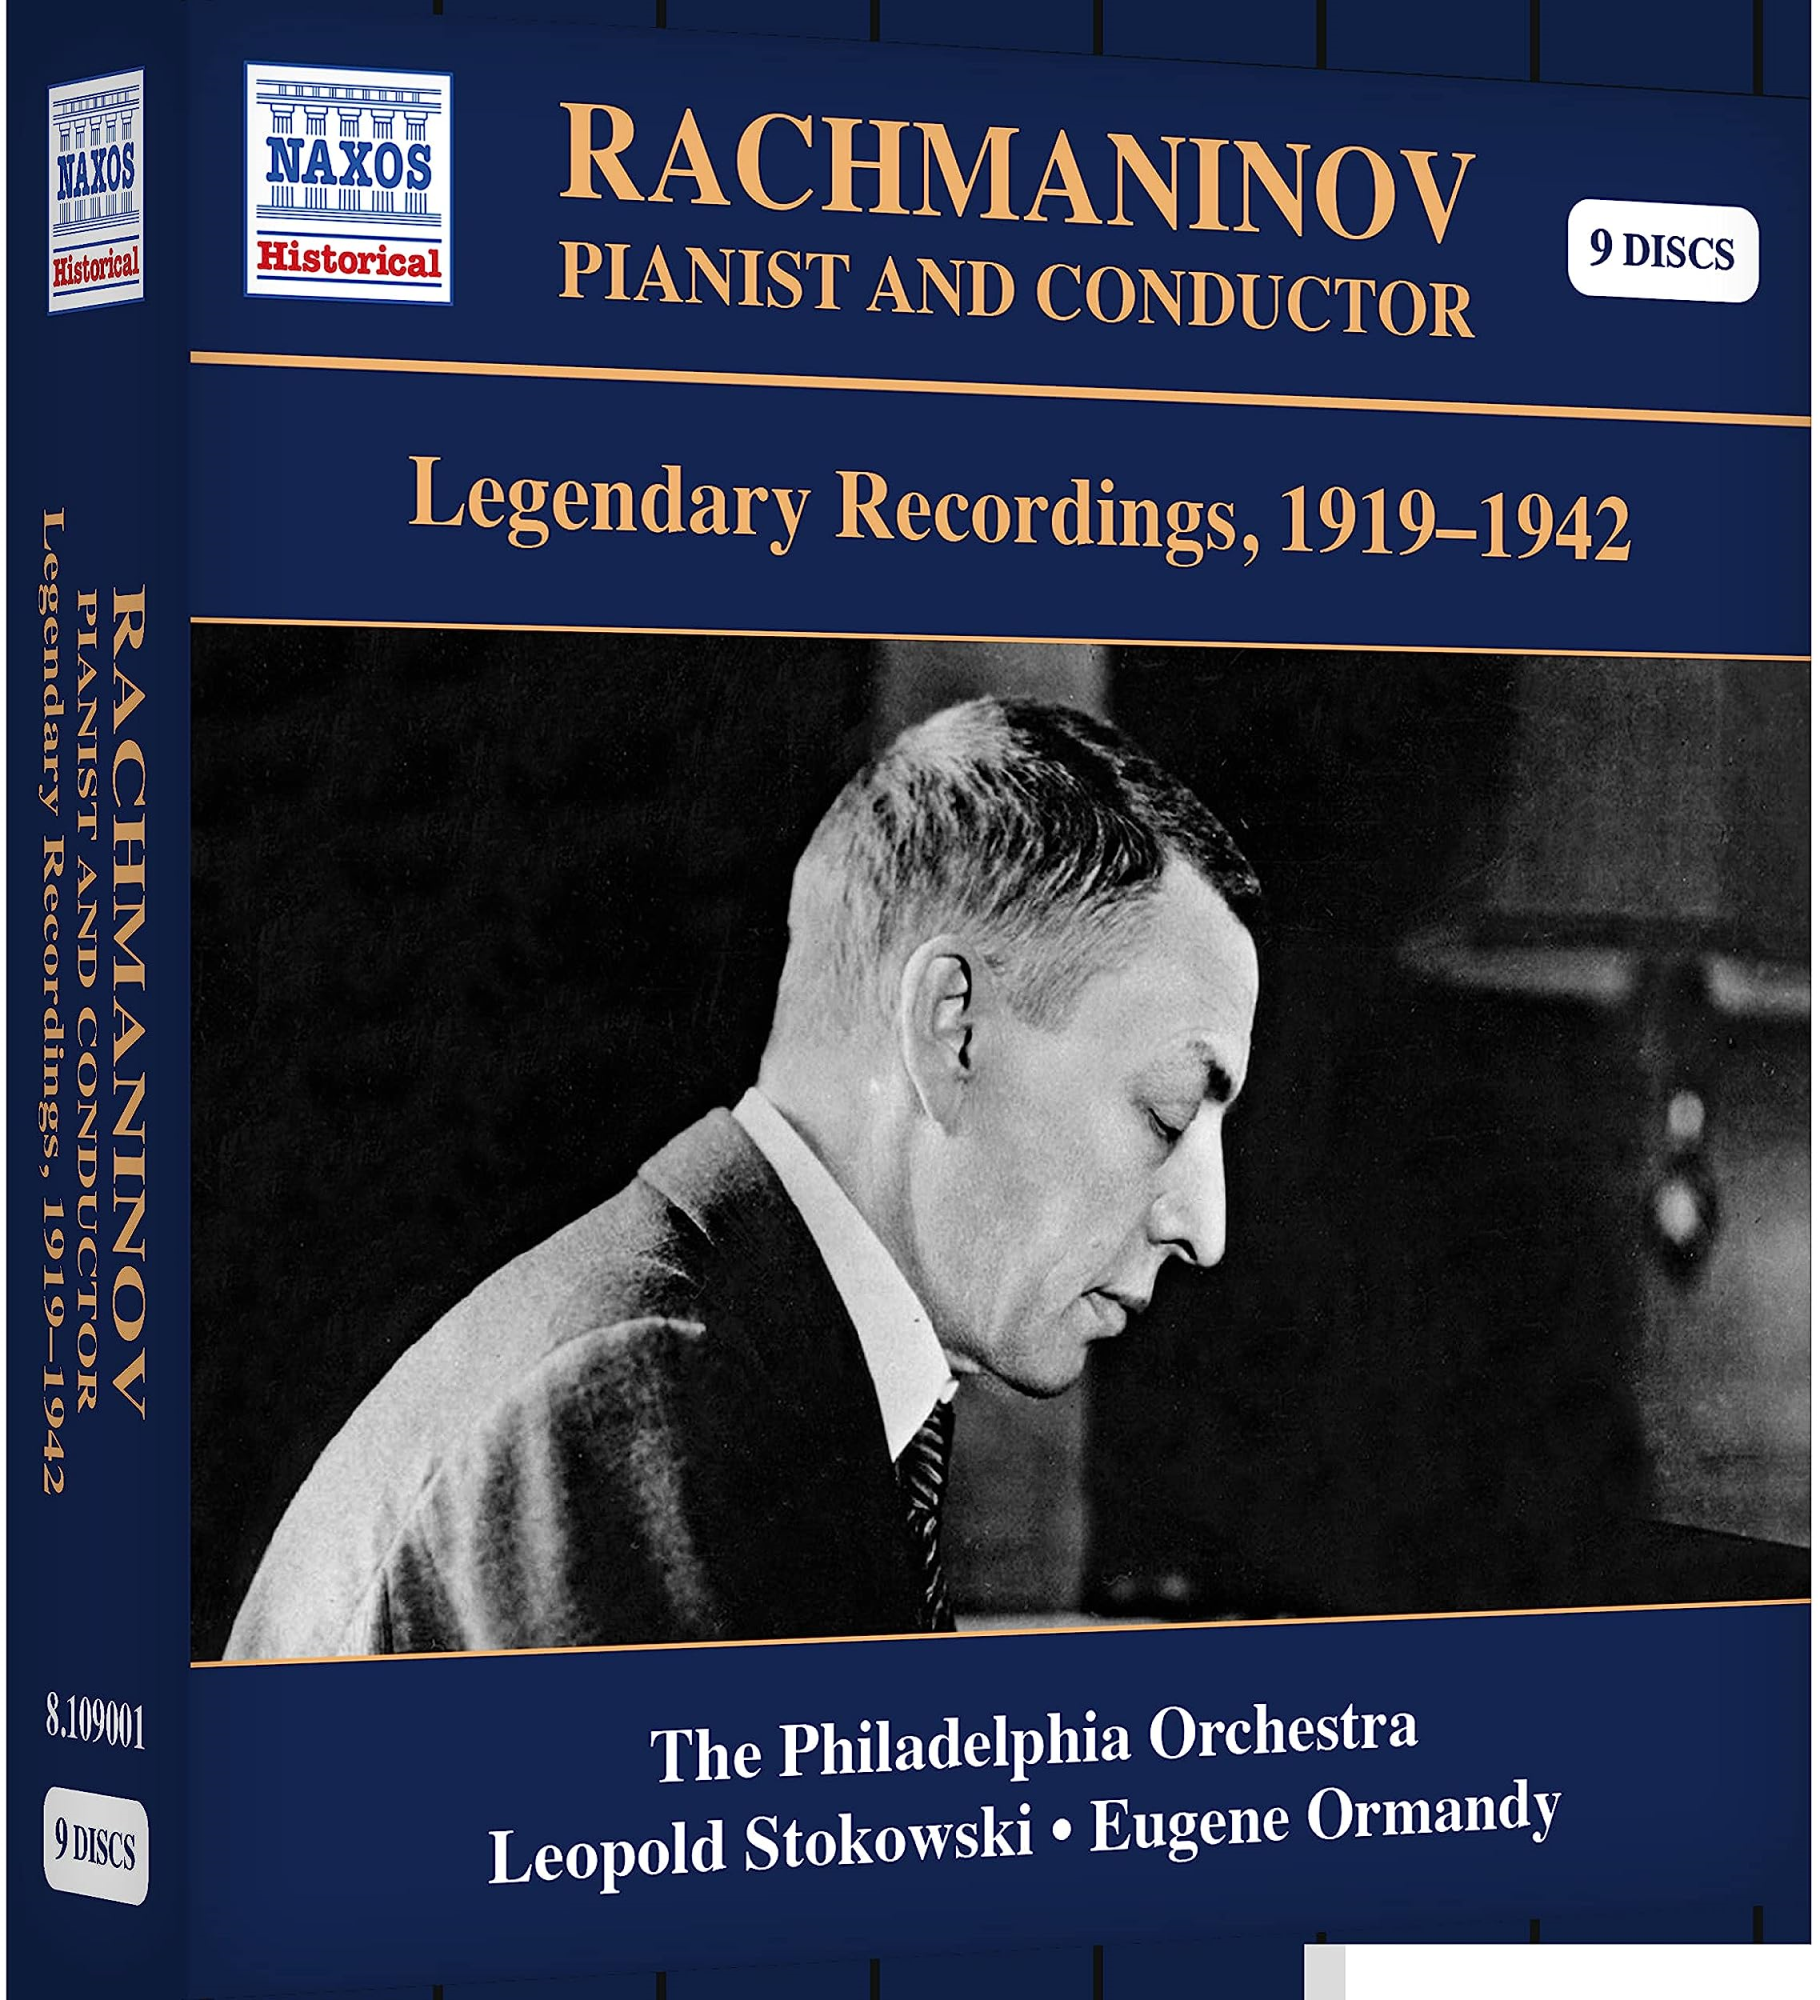 Audio Cd Rachmaninov: Pianist And Conductor - Legendary Recordings 1919-1942 9 Cd NUOVO SIGILLATO EDIZIONE DEL SUBITO DISPONIBILE